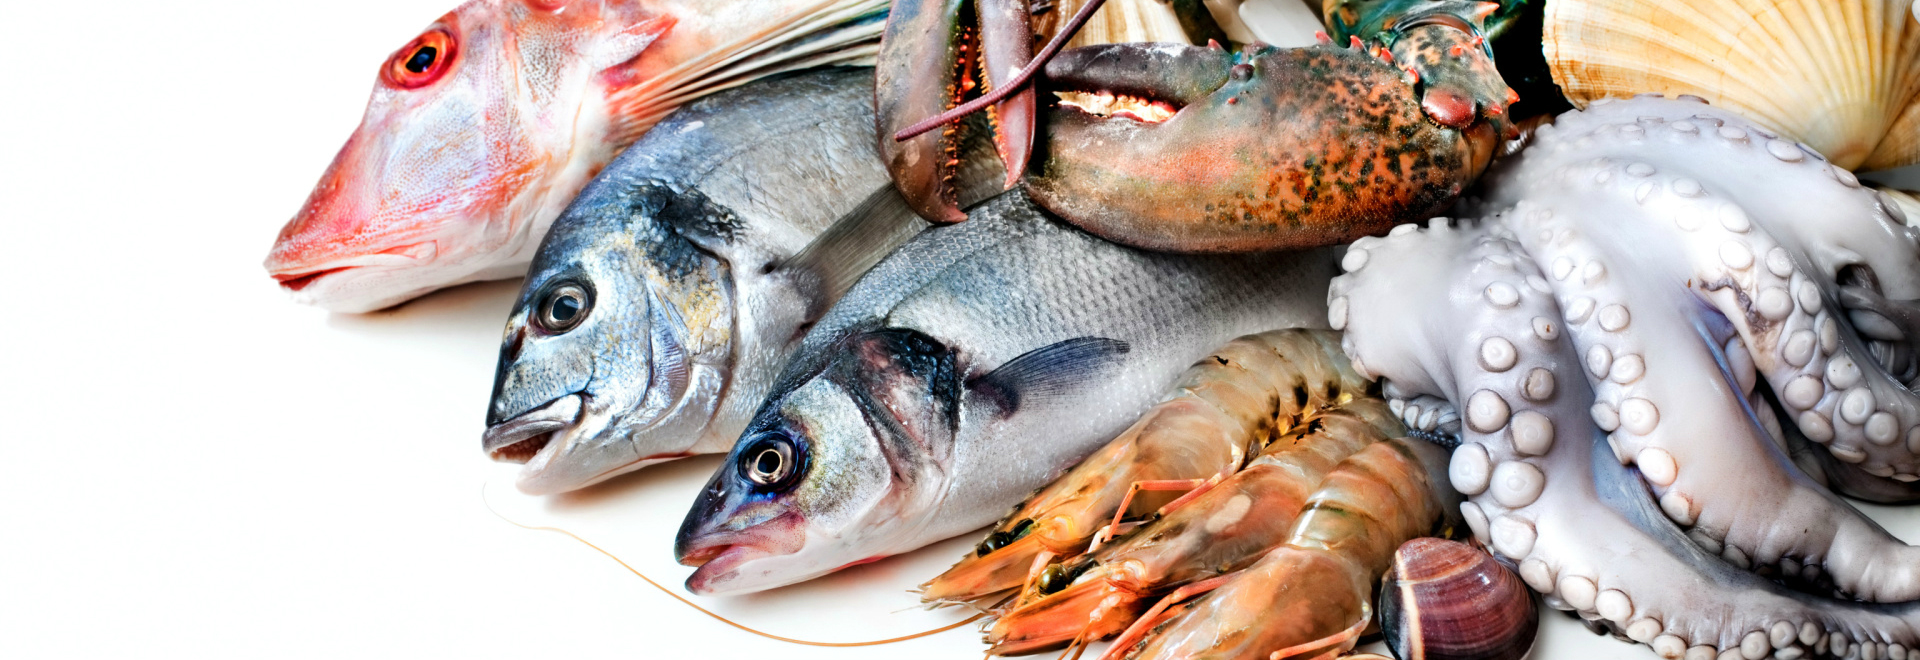 10 meilleurs restaurants de poisson à Lisbonne